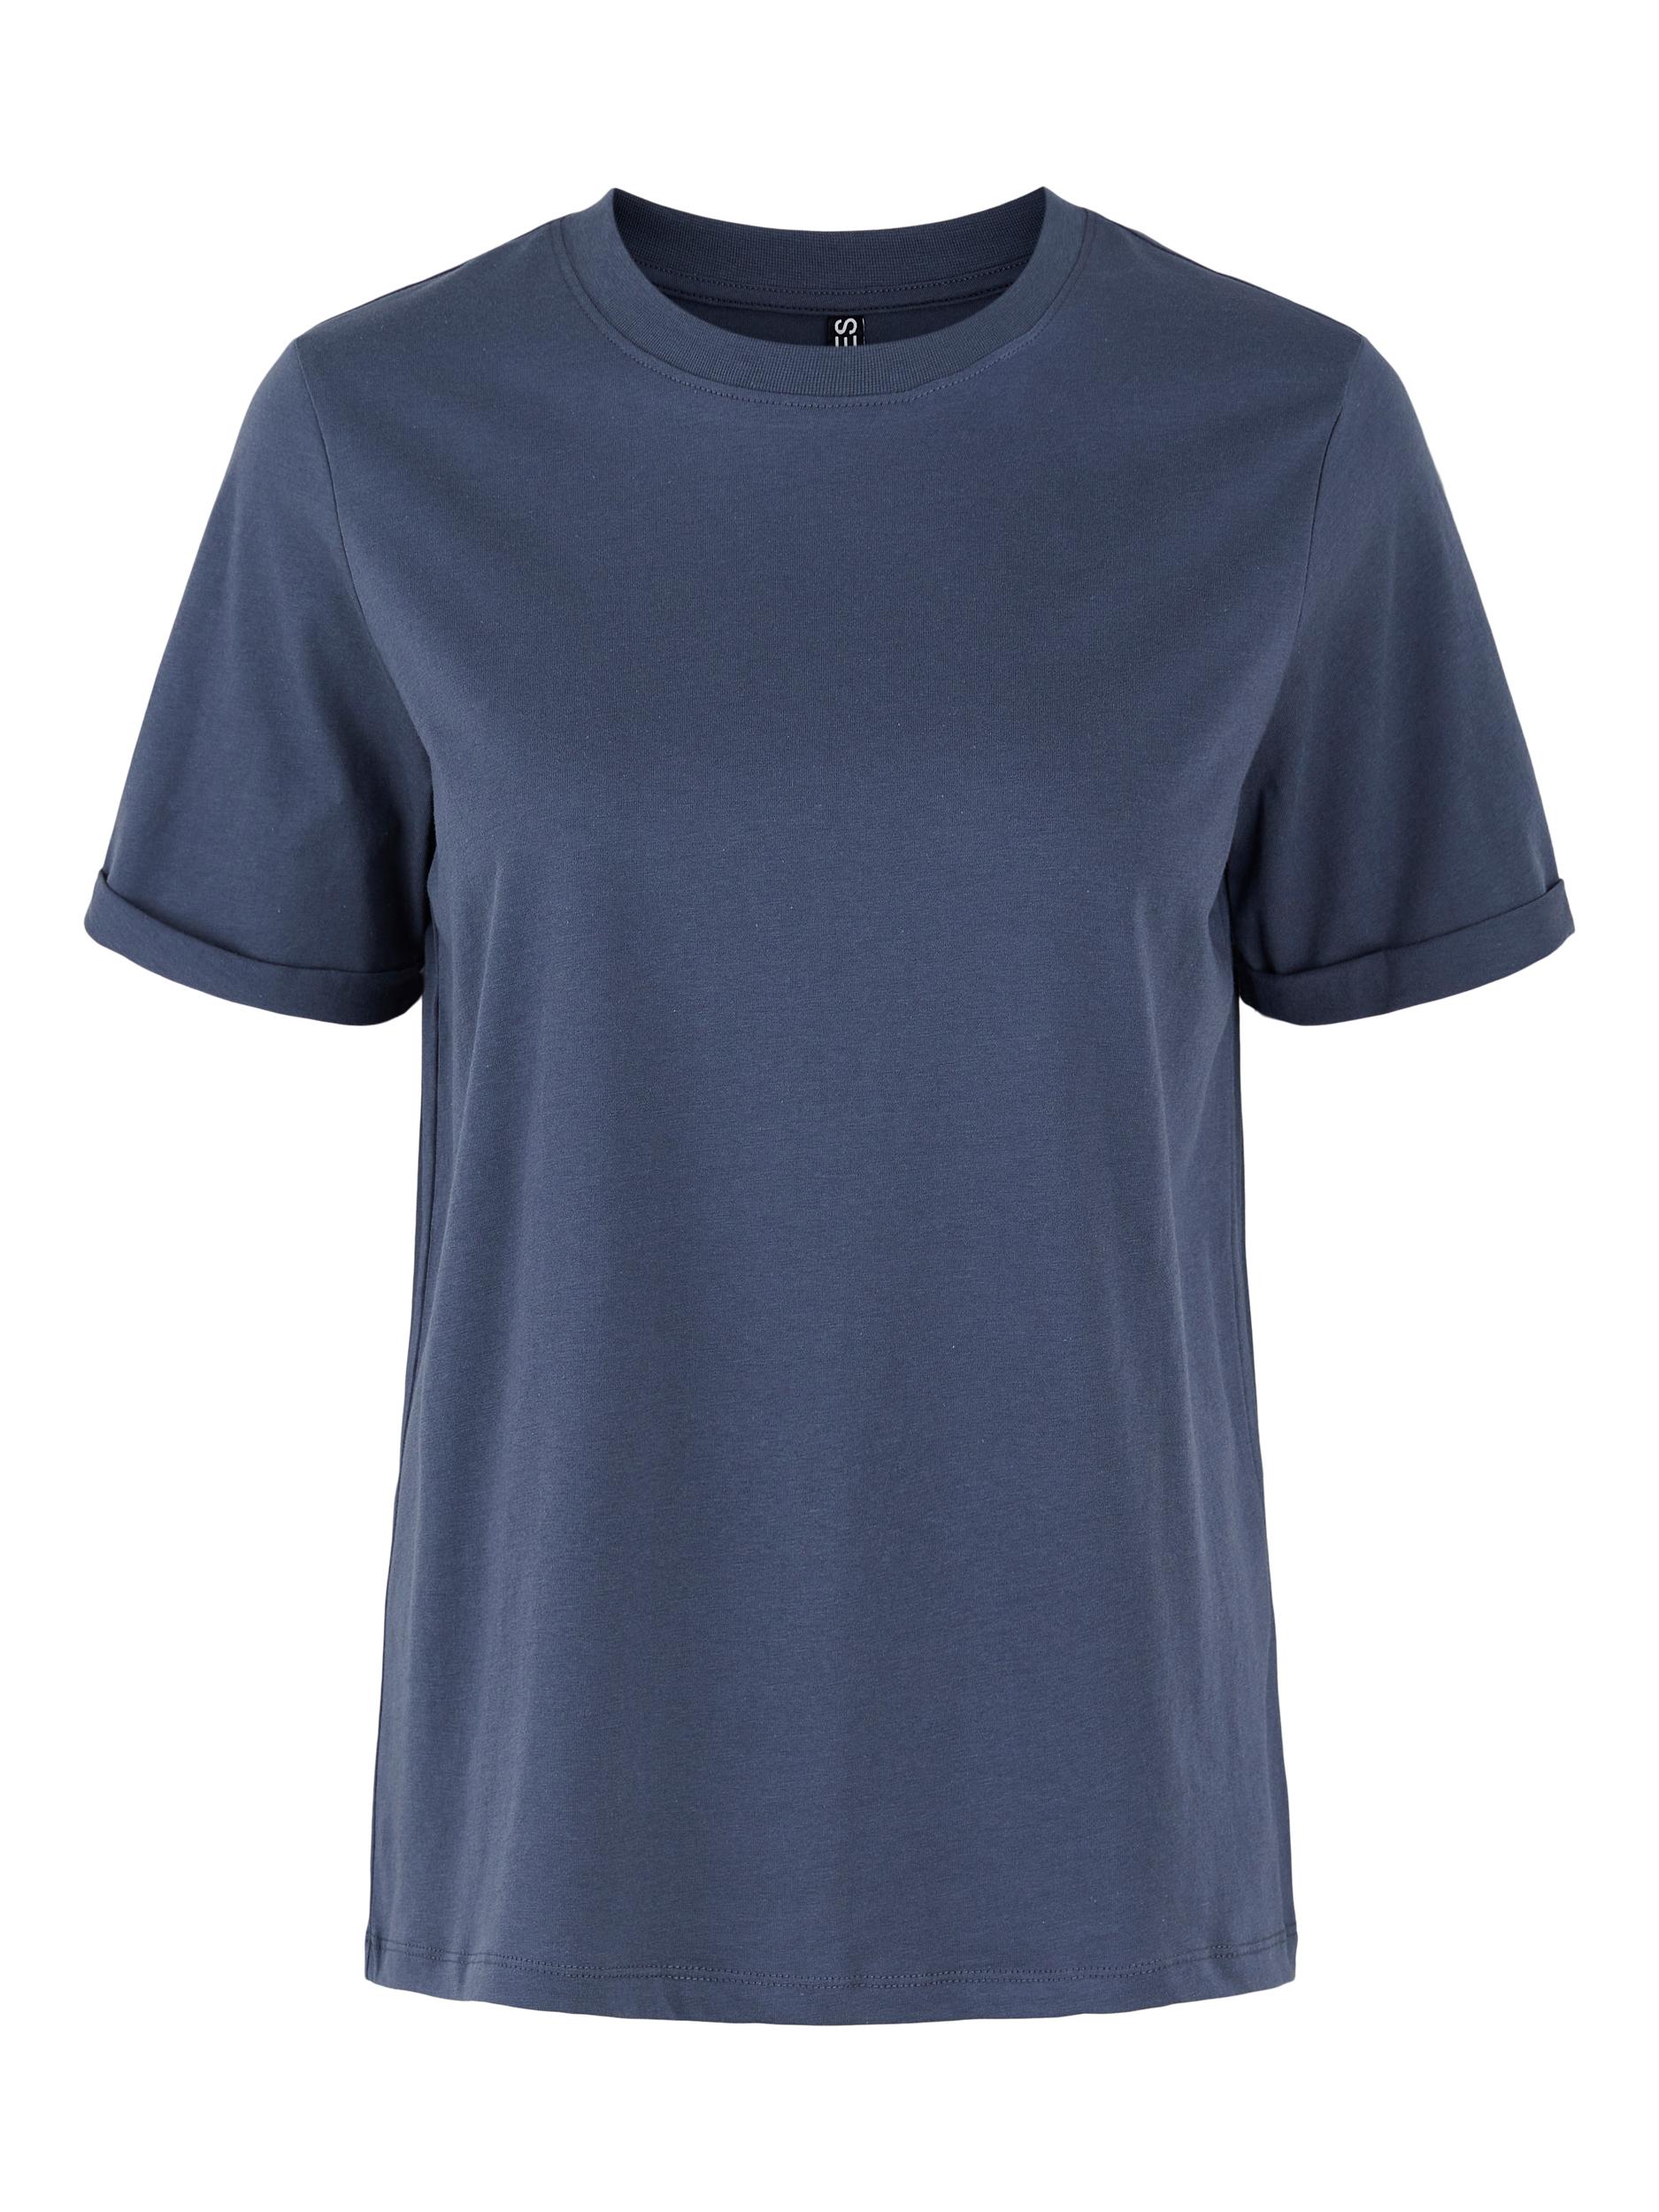 Koszulki & topy VJw15 PIECES Koszulka Ria w kolorze Granatowym 